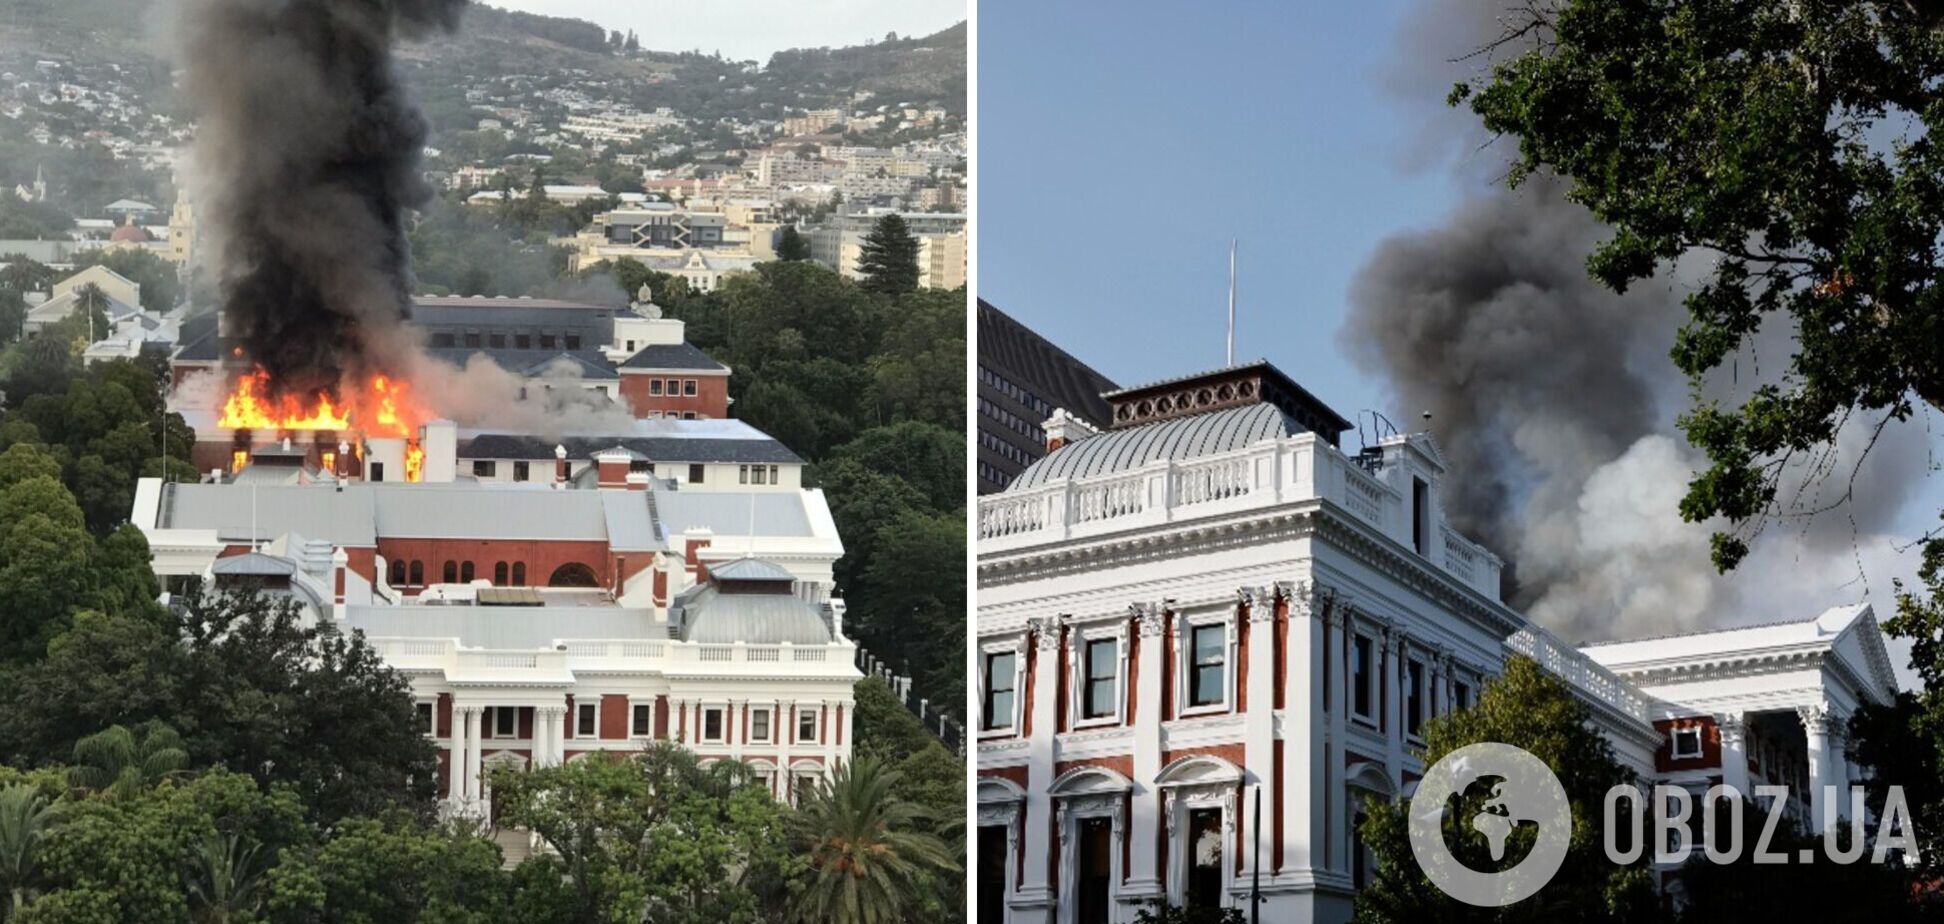 Парламент ЮАР охватил мощный пожар, есть вероятность обрушения. Фото и видео